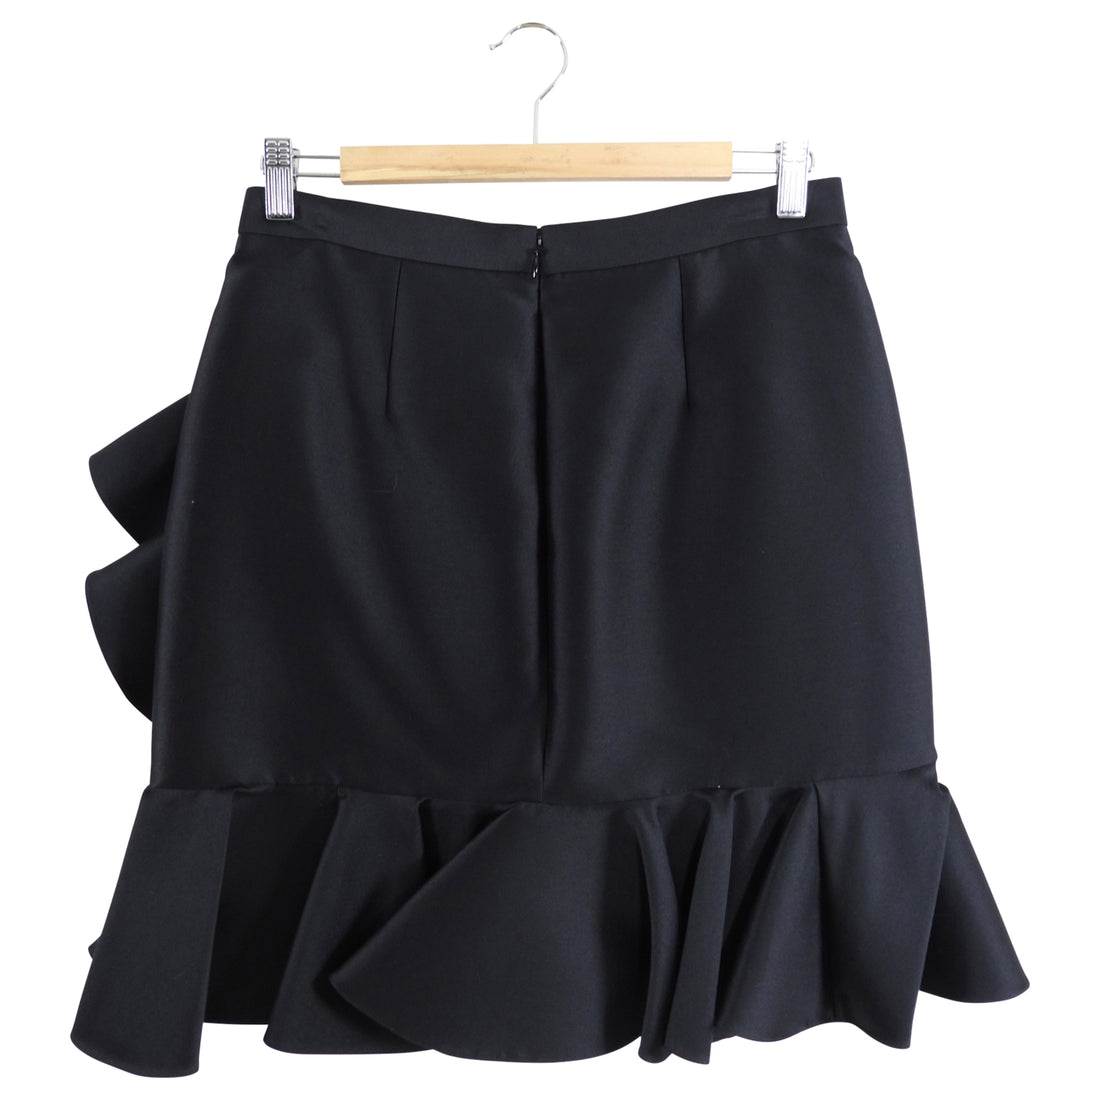 Stella McCartney Black Ruffle Skirt - IT42 / USA 8 / M